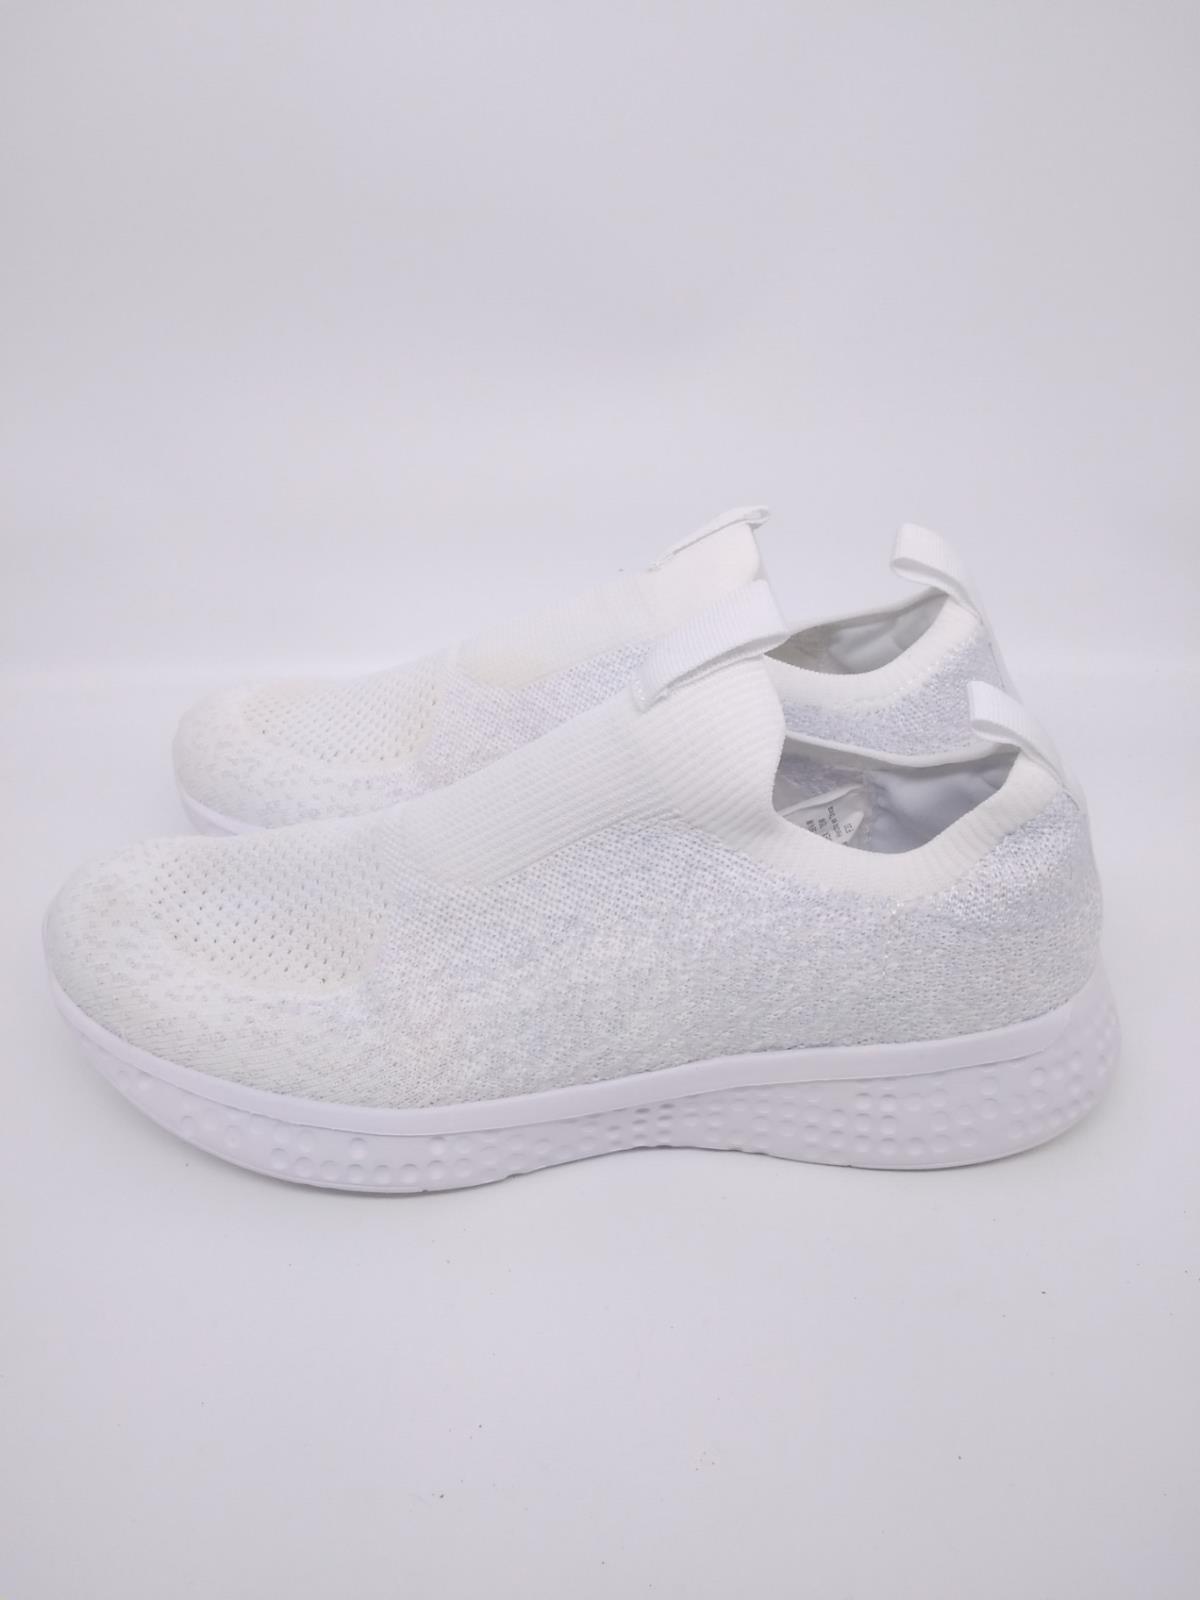 Avia Unisex Kids White Memory Foam Slip On Sneaker Athletic Shoes Size ...